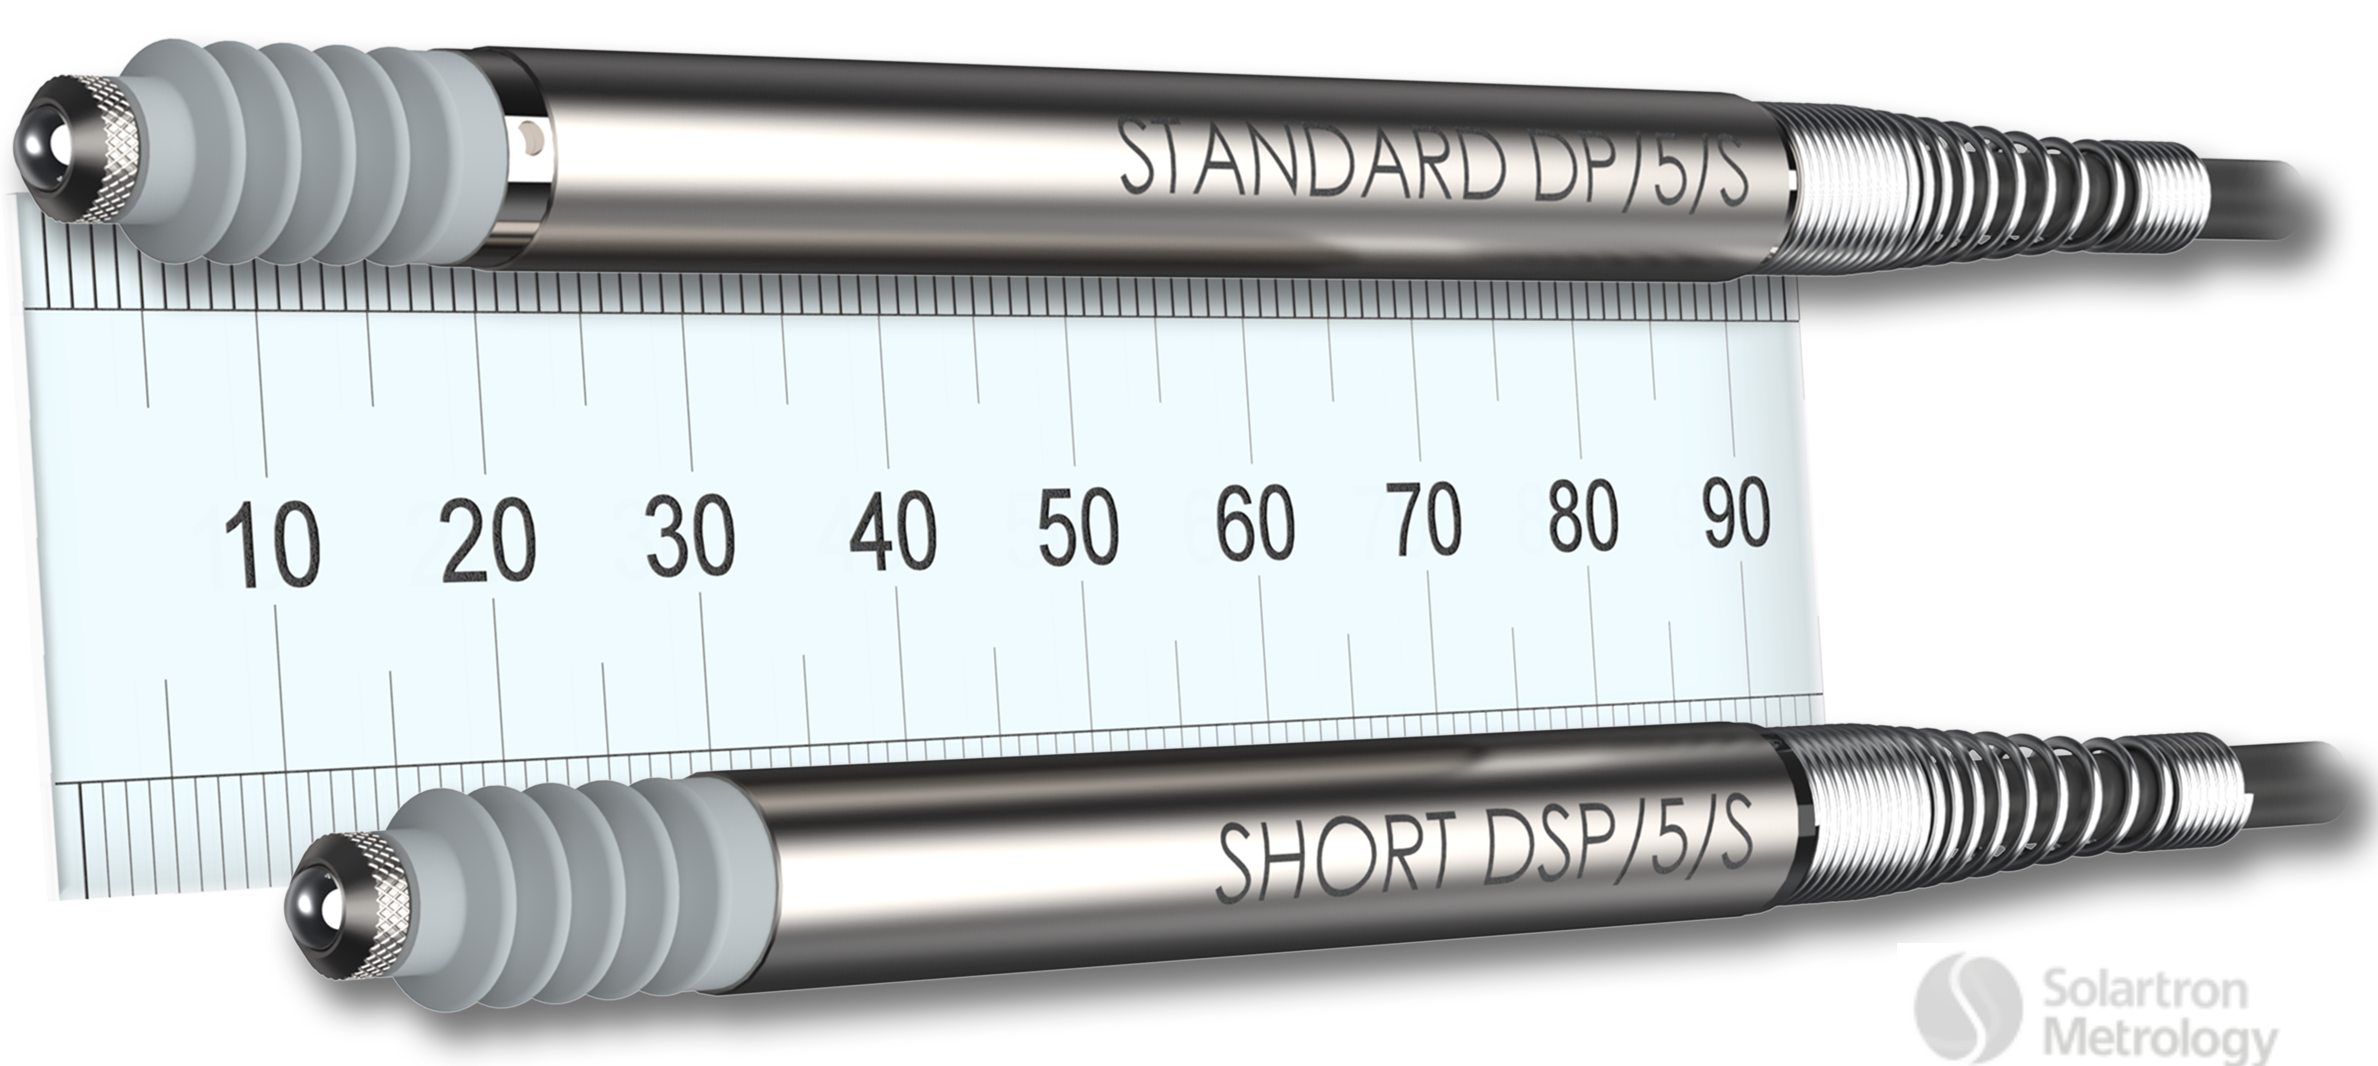 Short probe compare to standard